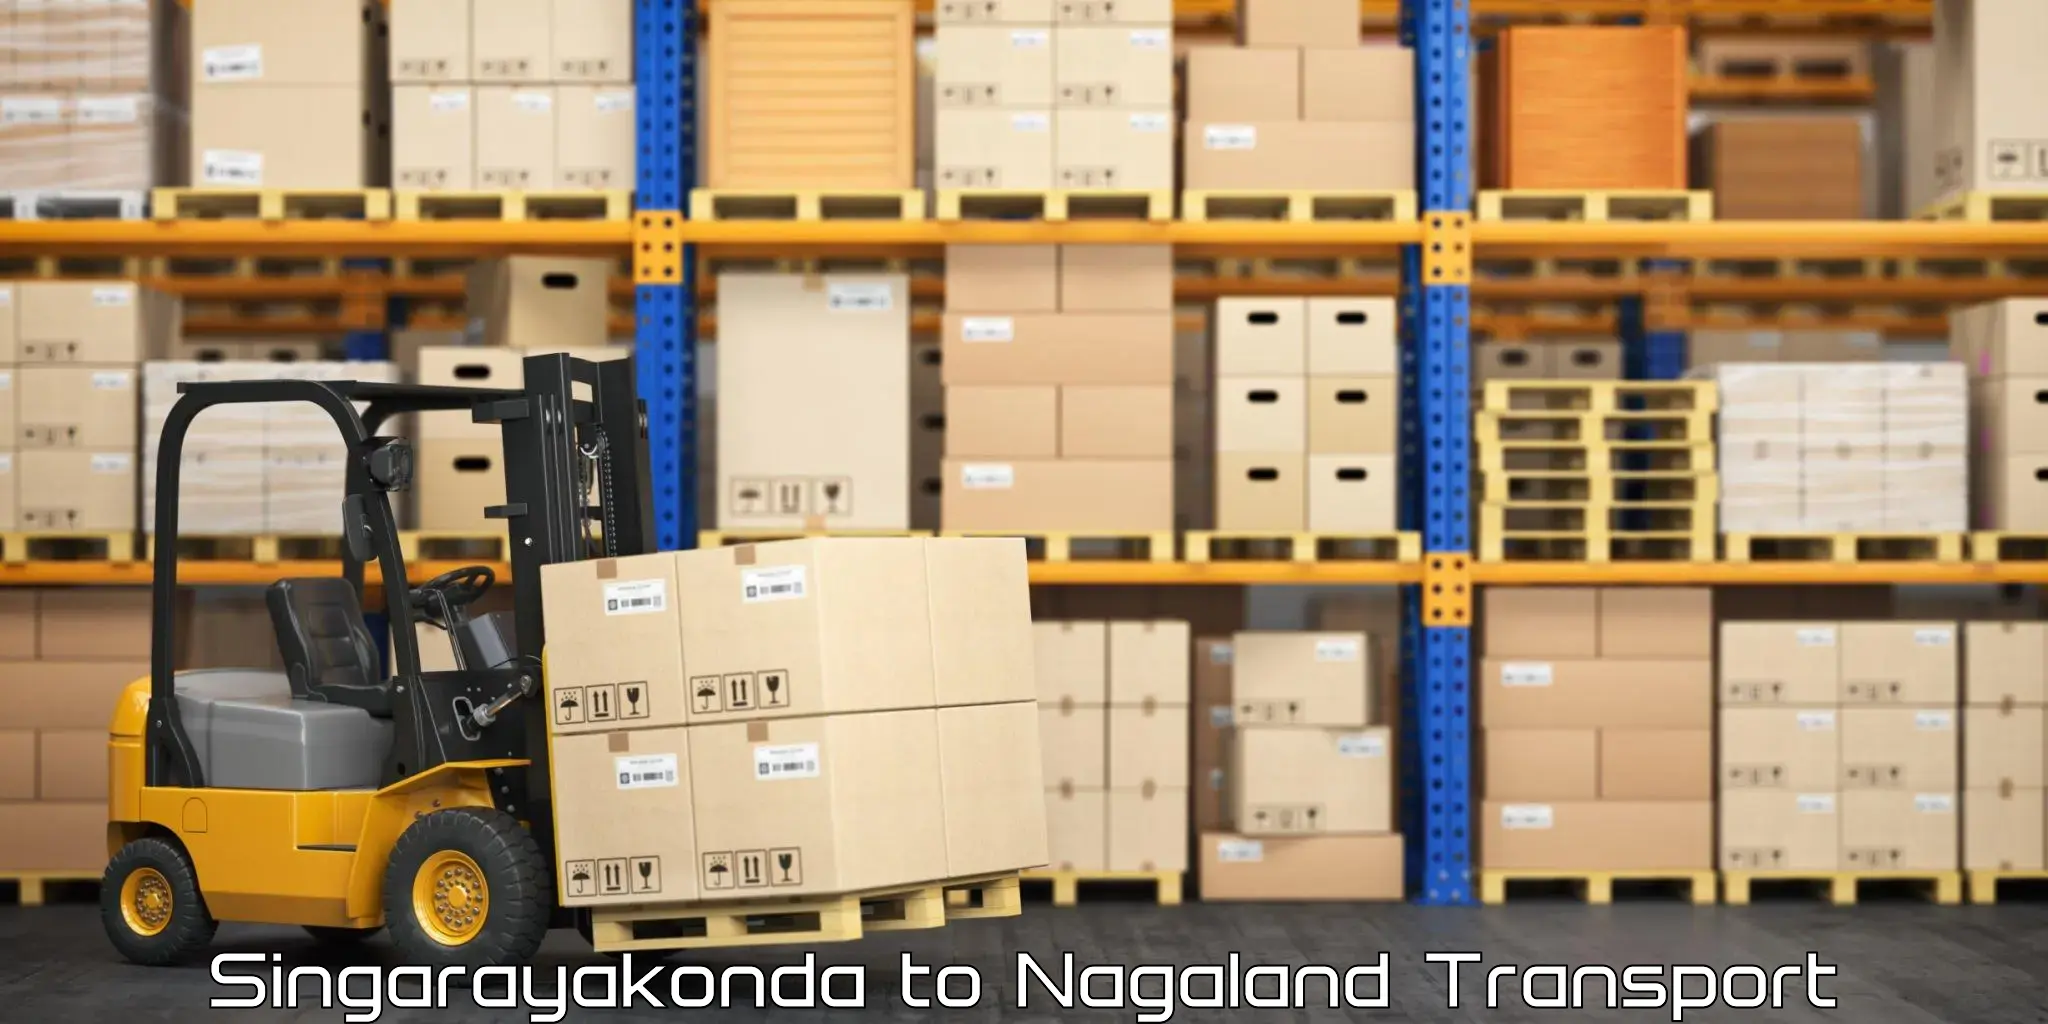 All India transport service Singarayakonda to Nagaland